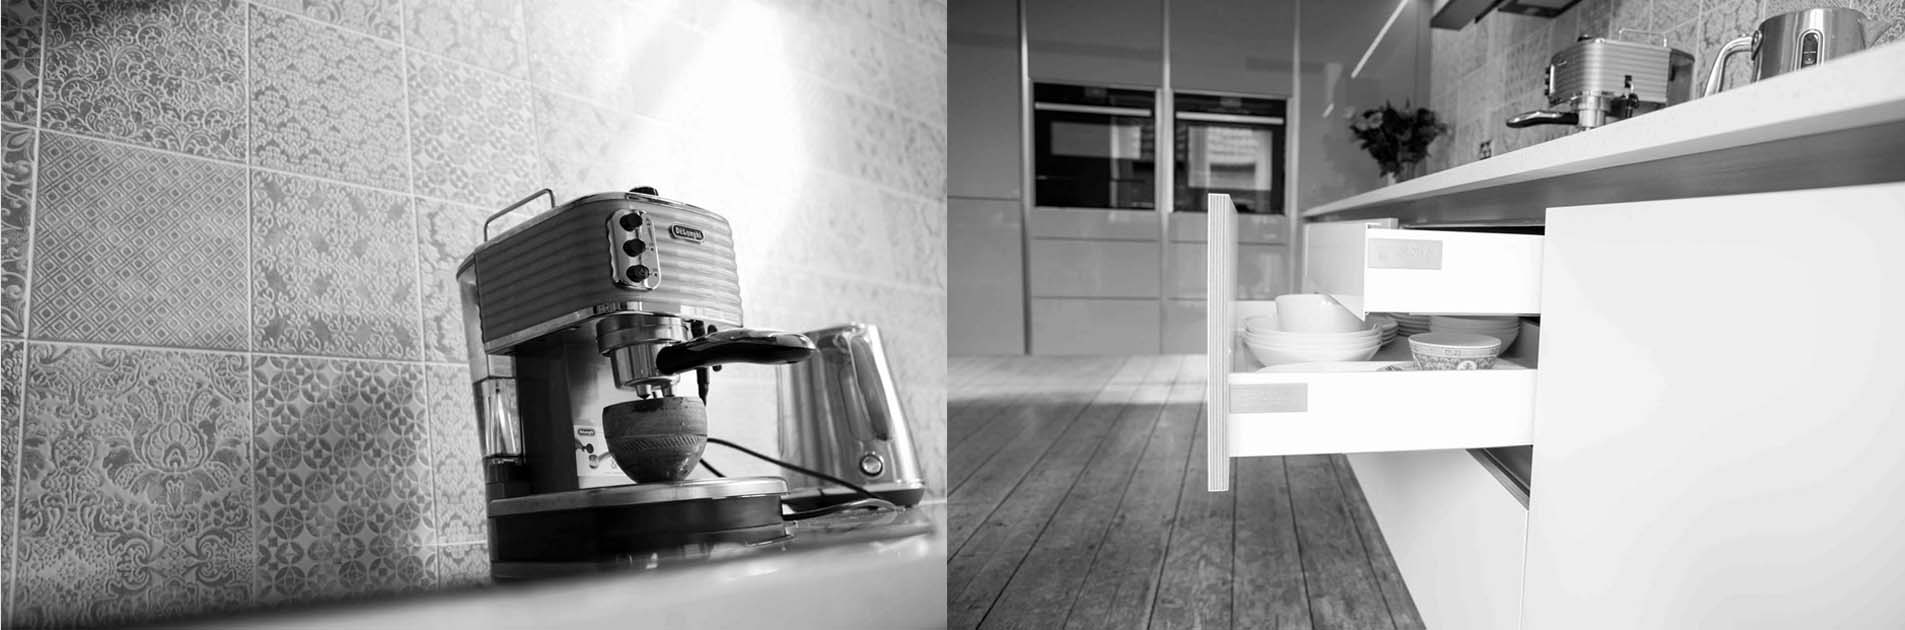 KItchen Case Study: Coffee maker on worktop and kitchen drawer unit storage